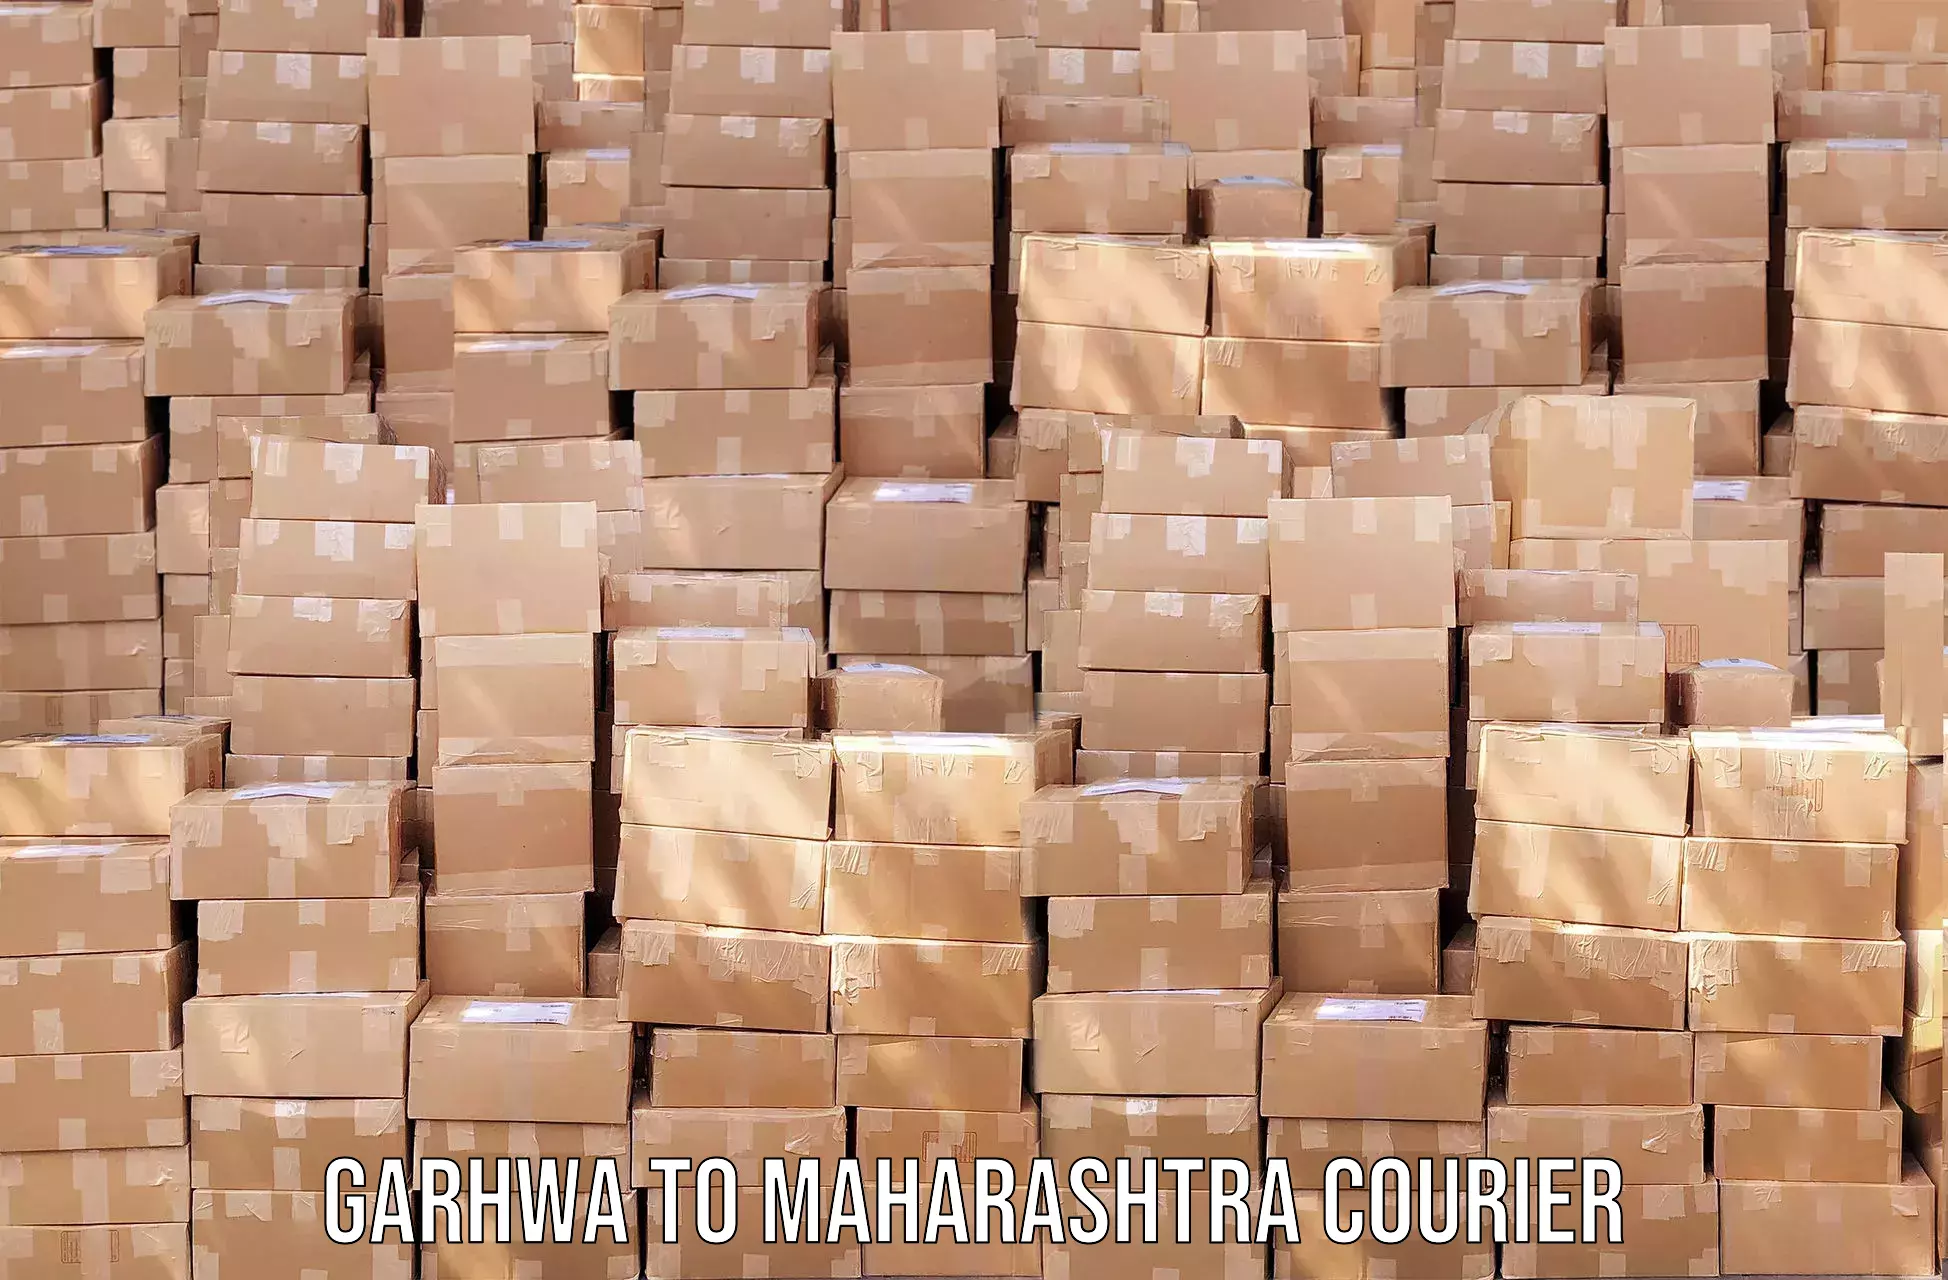 Digital courier platforms Garhwa to Shrivardhan